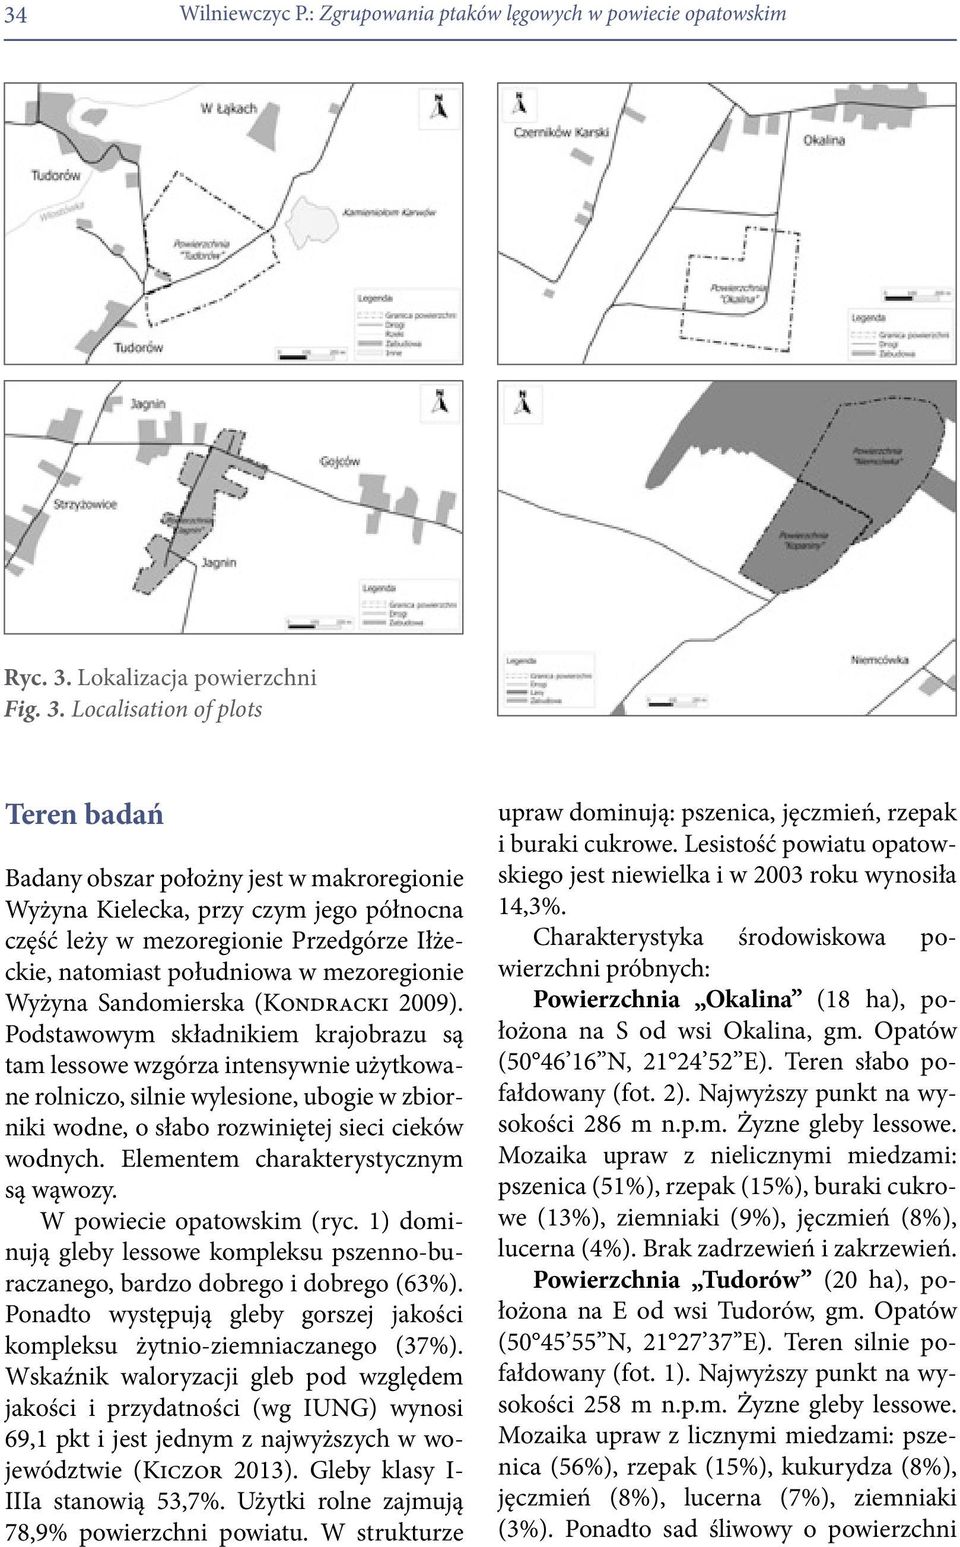 Localisation of plots Teren badań Badany obszar położny jest w makroregionie Wyżyna Kielecka, przy czym jego północna część leży w mezoregionie Przedgórze Iłżeckie, natomiast południowa w